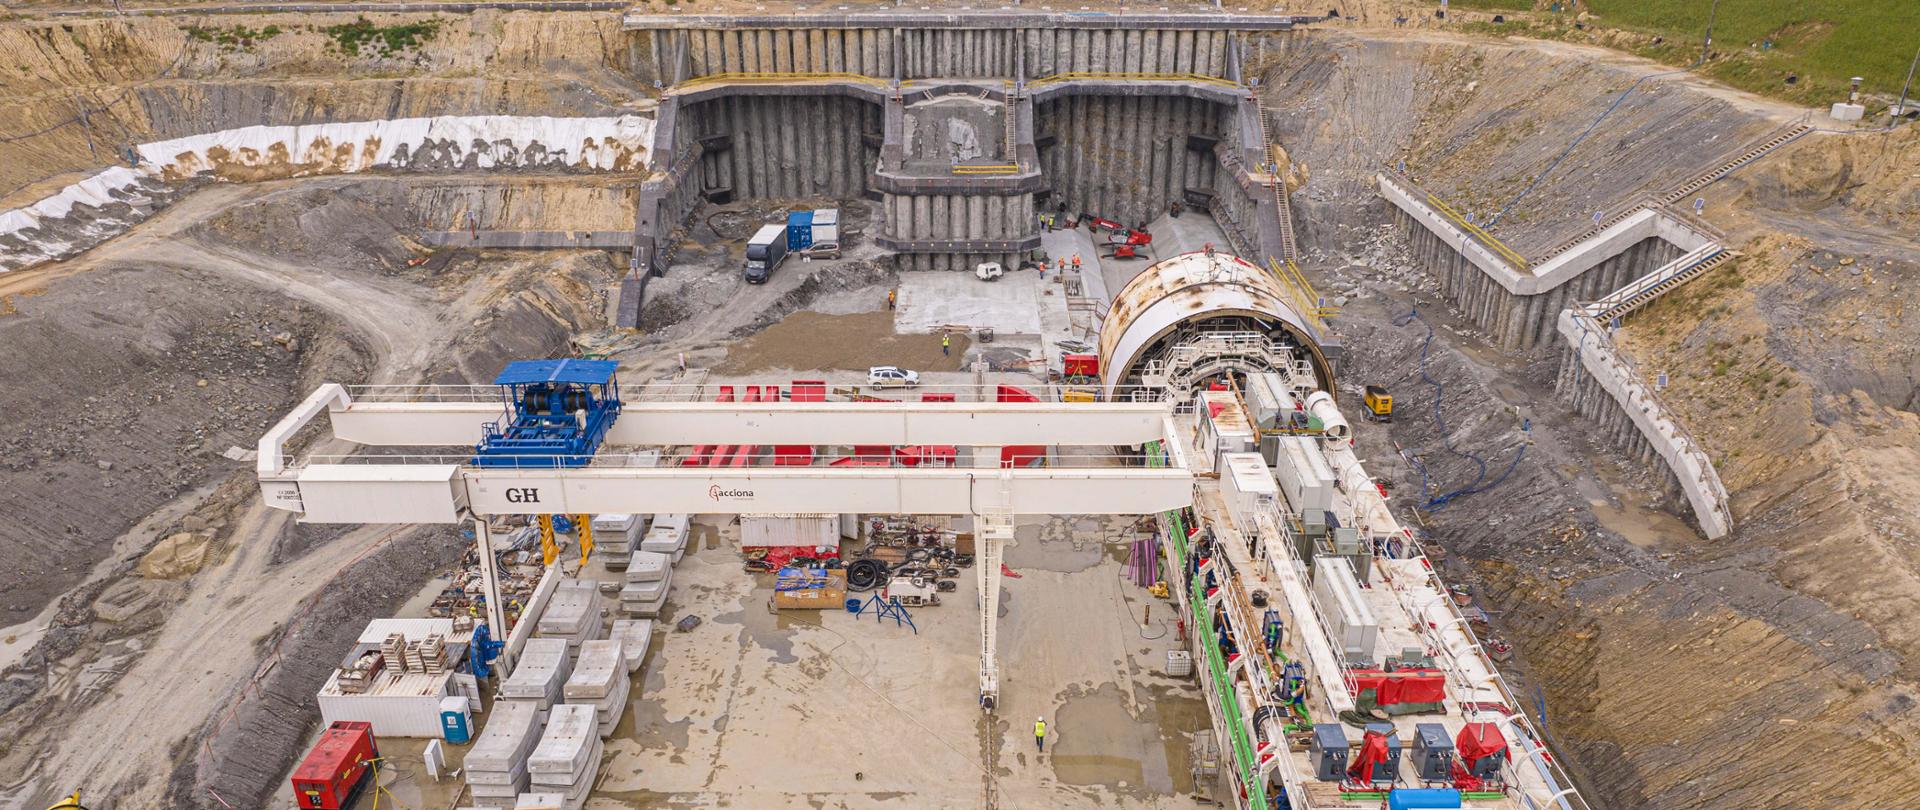 Widok na portal południowy budowy tunelu na S19 Rzeszów Płd. - Babica, widać maszynę TBM na placu budowy